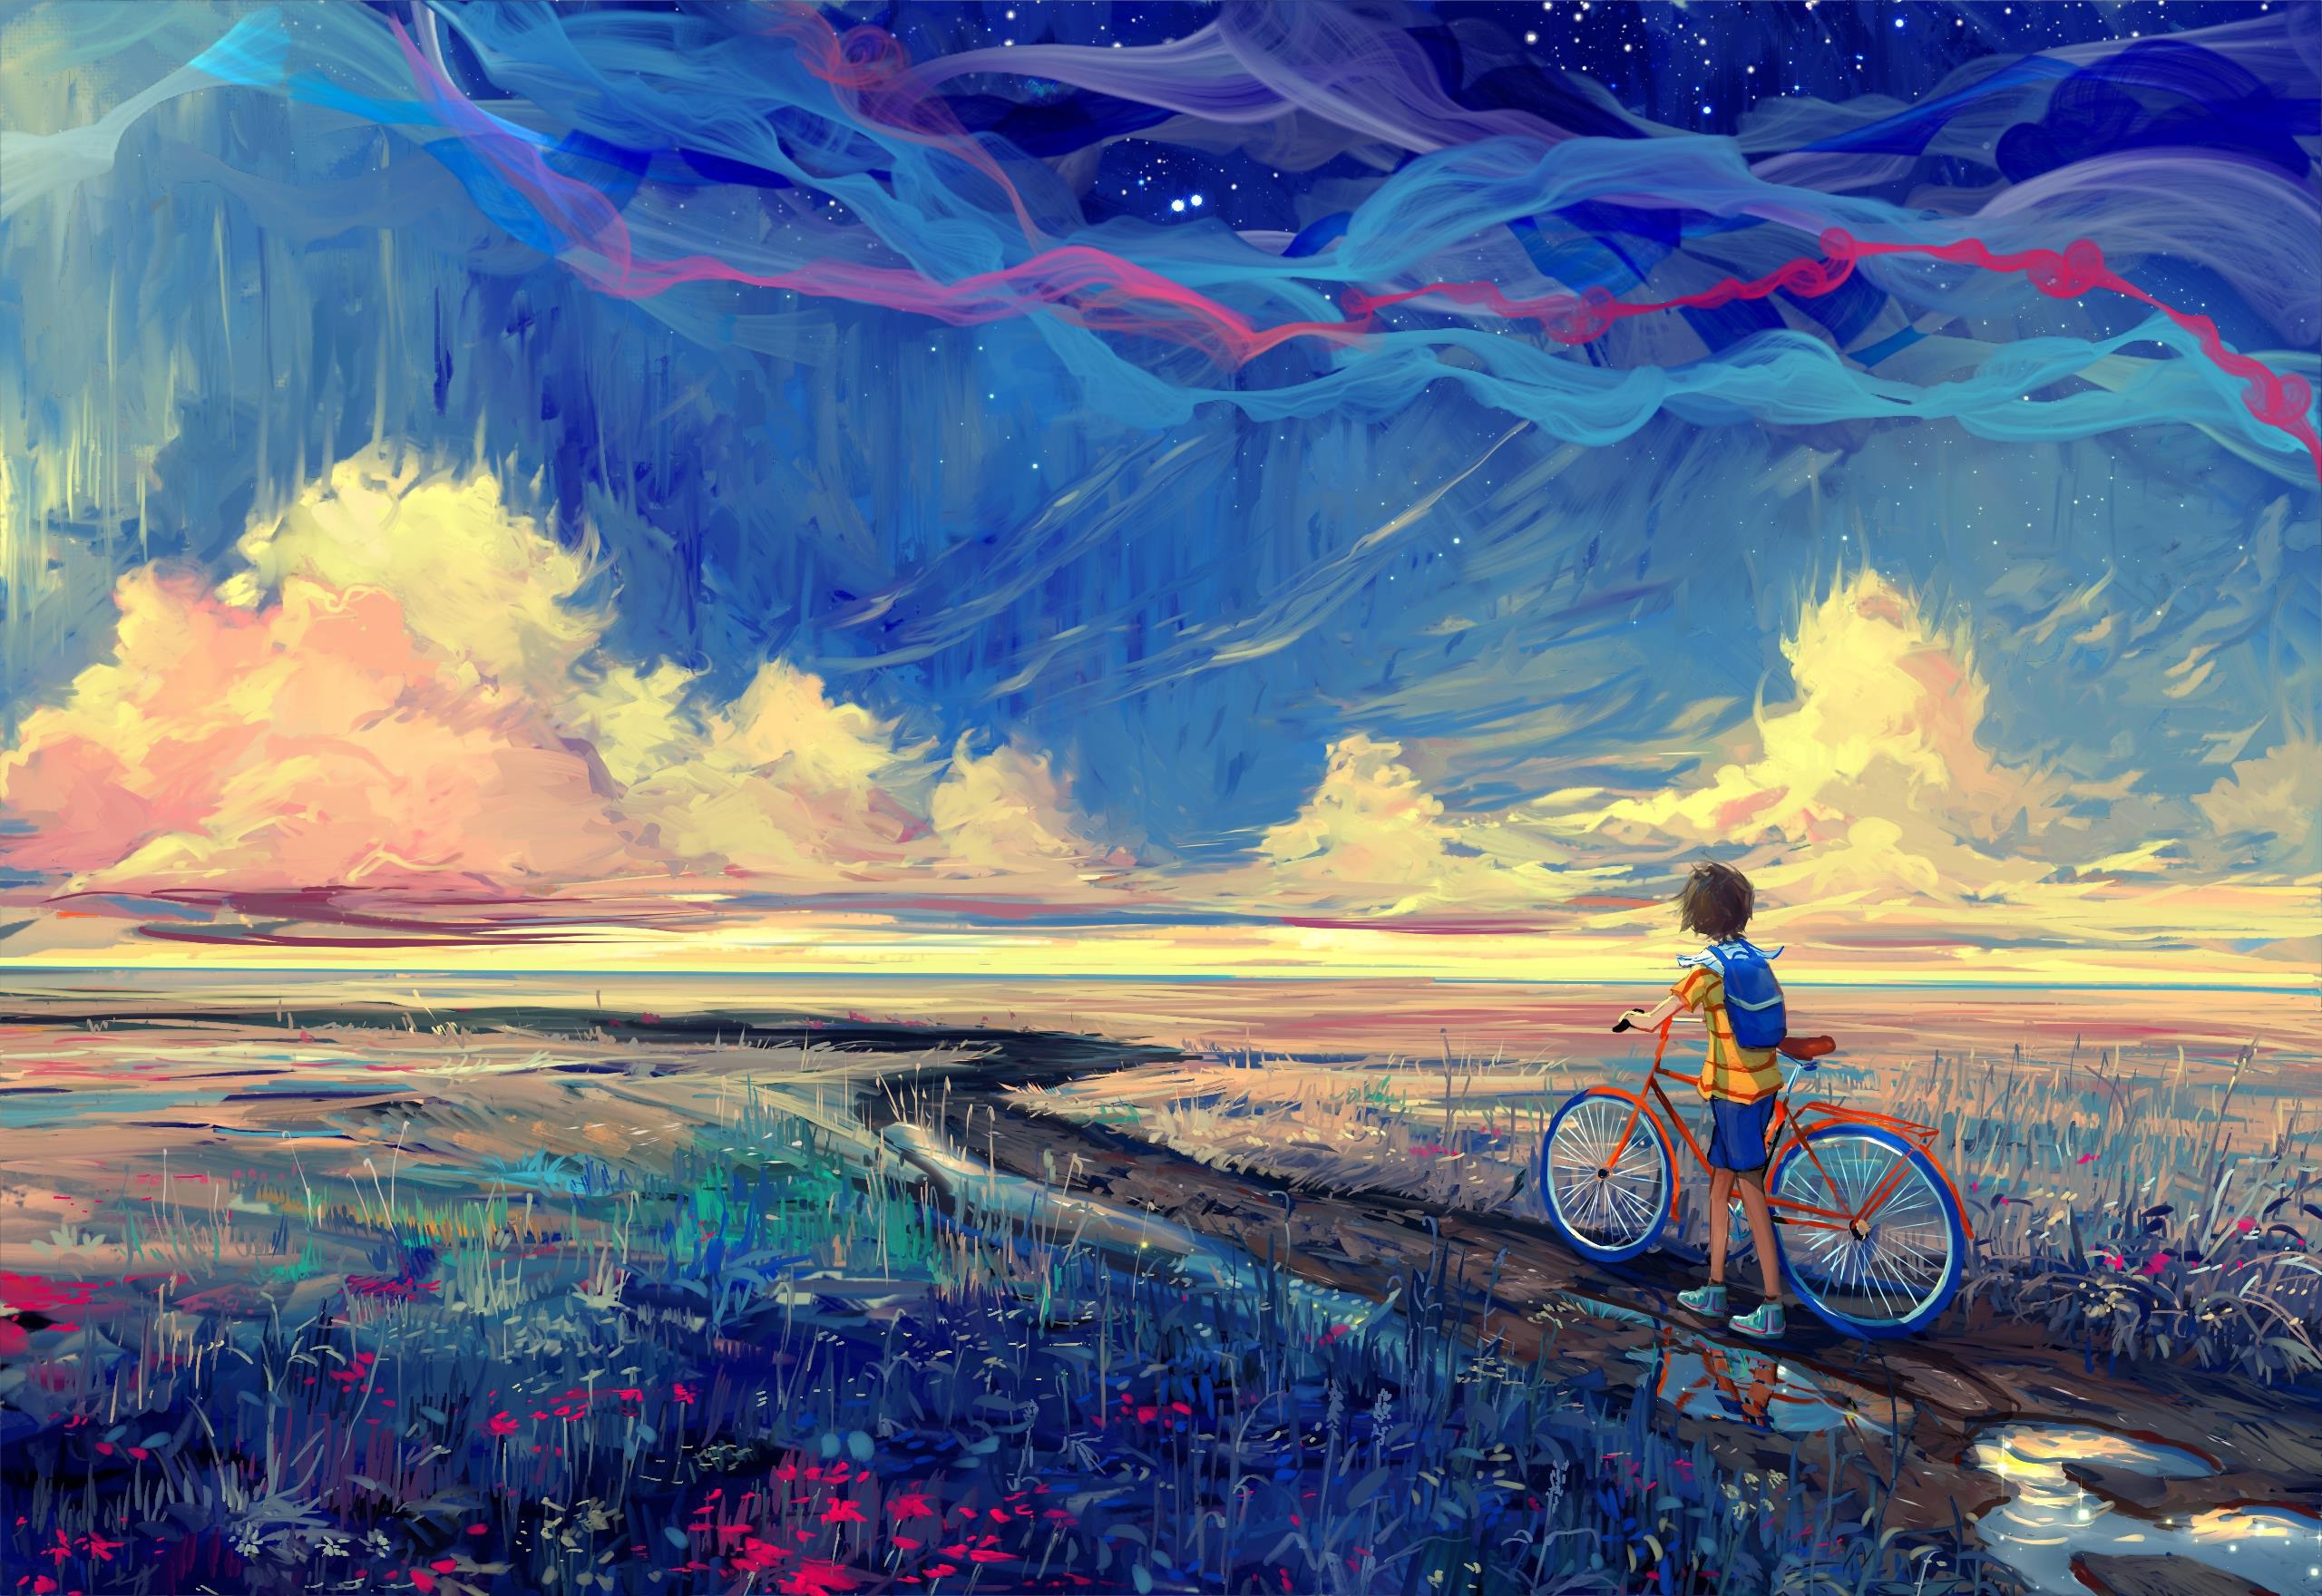 bicycle, Artwork, Fantasy Art Wallpapers HD / Desktop and Mobile